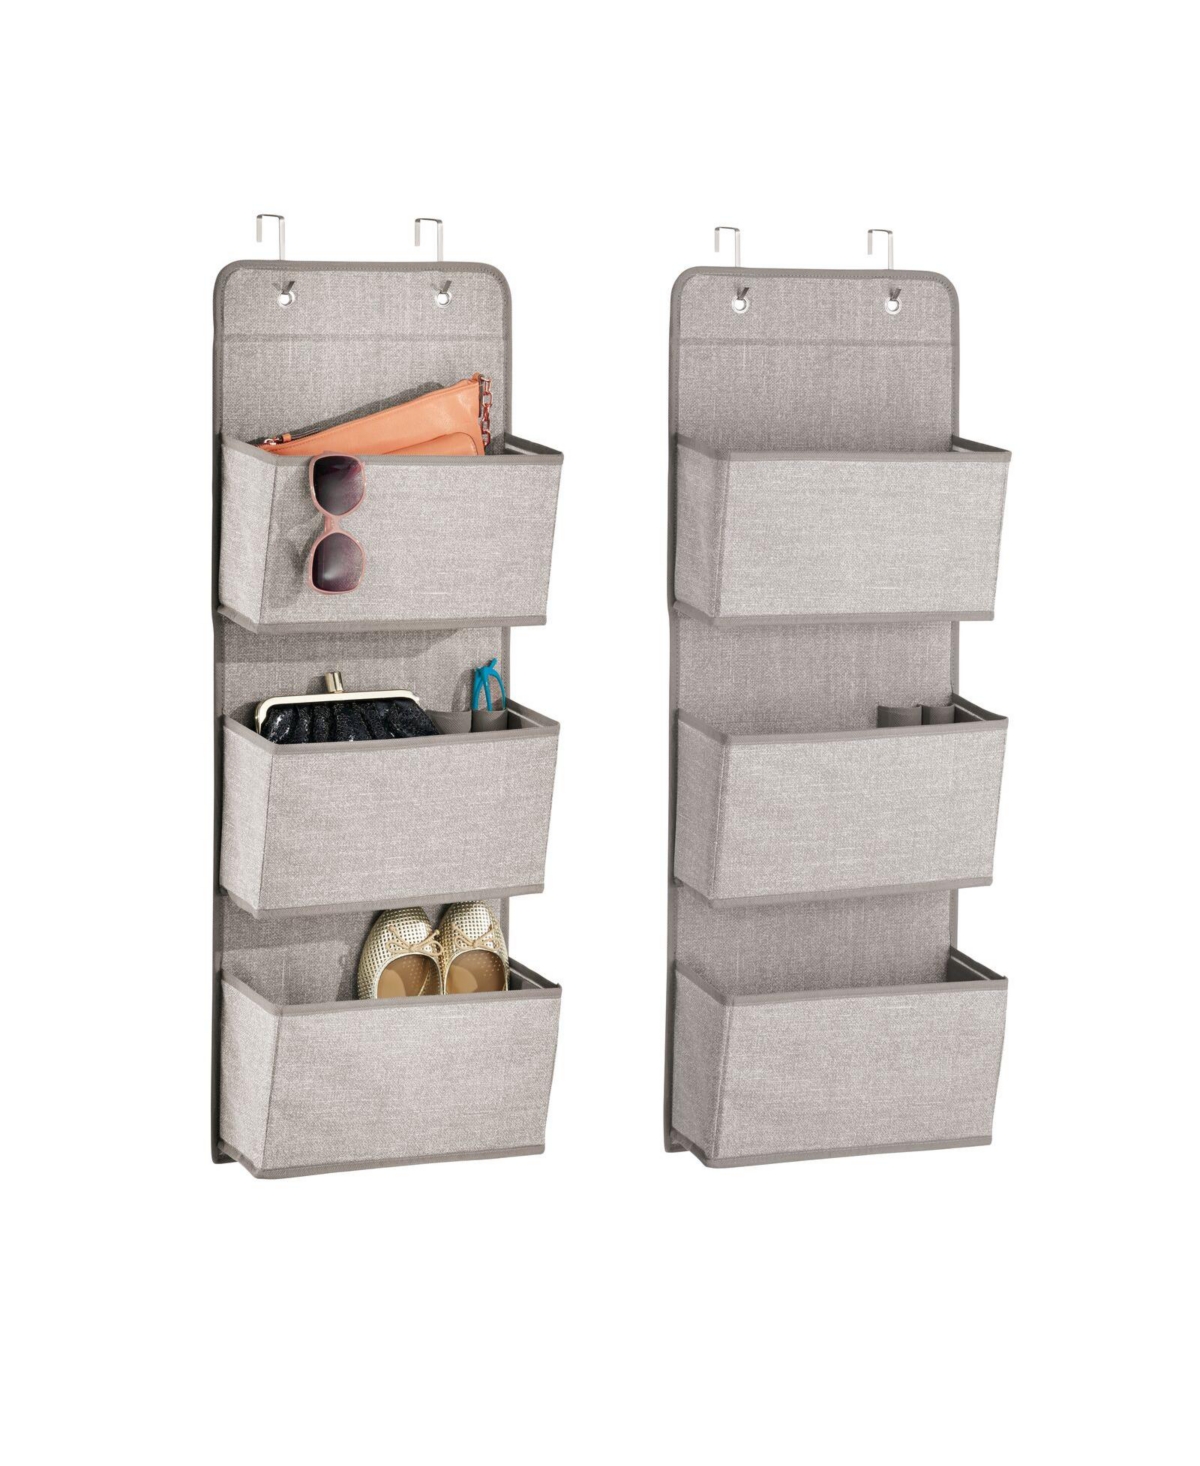 Fabric Closet Hanging Organizers - 3 Pockets + Hooks, 2 Pack, Linen/Tan - Linen